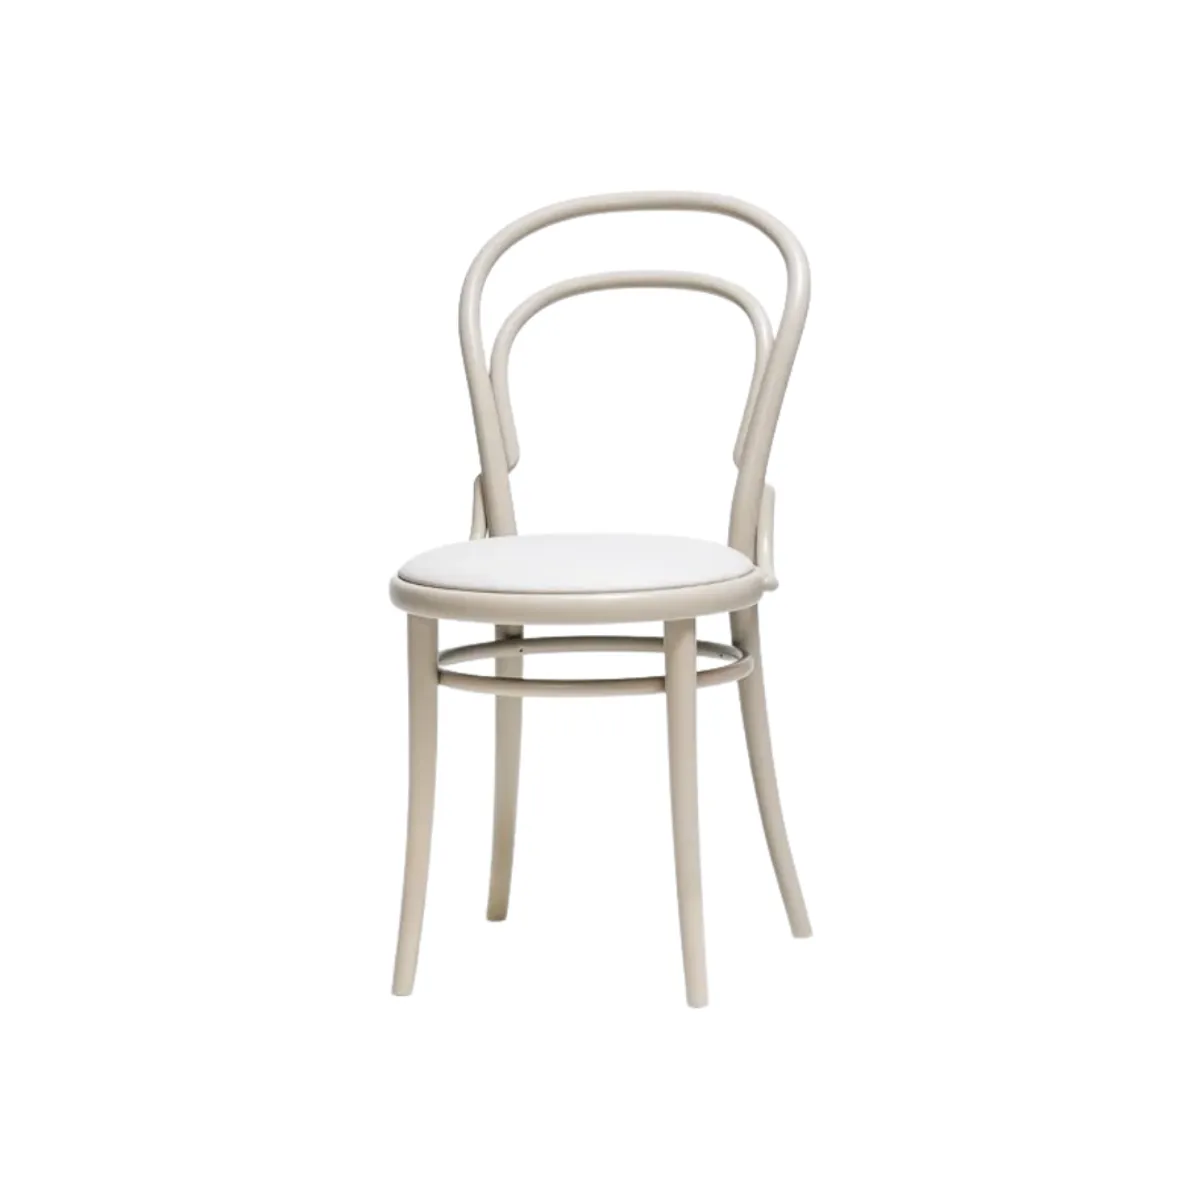 Raffaello side chair 1